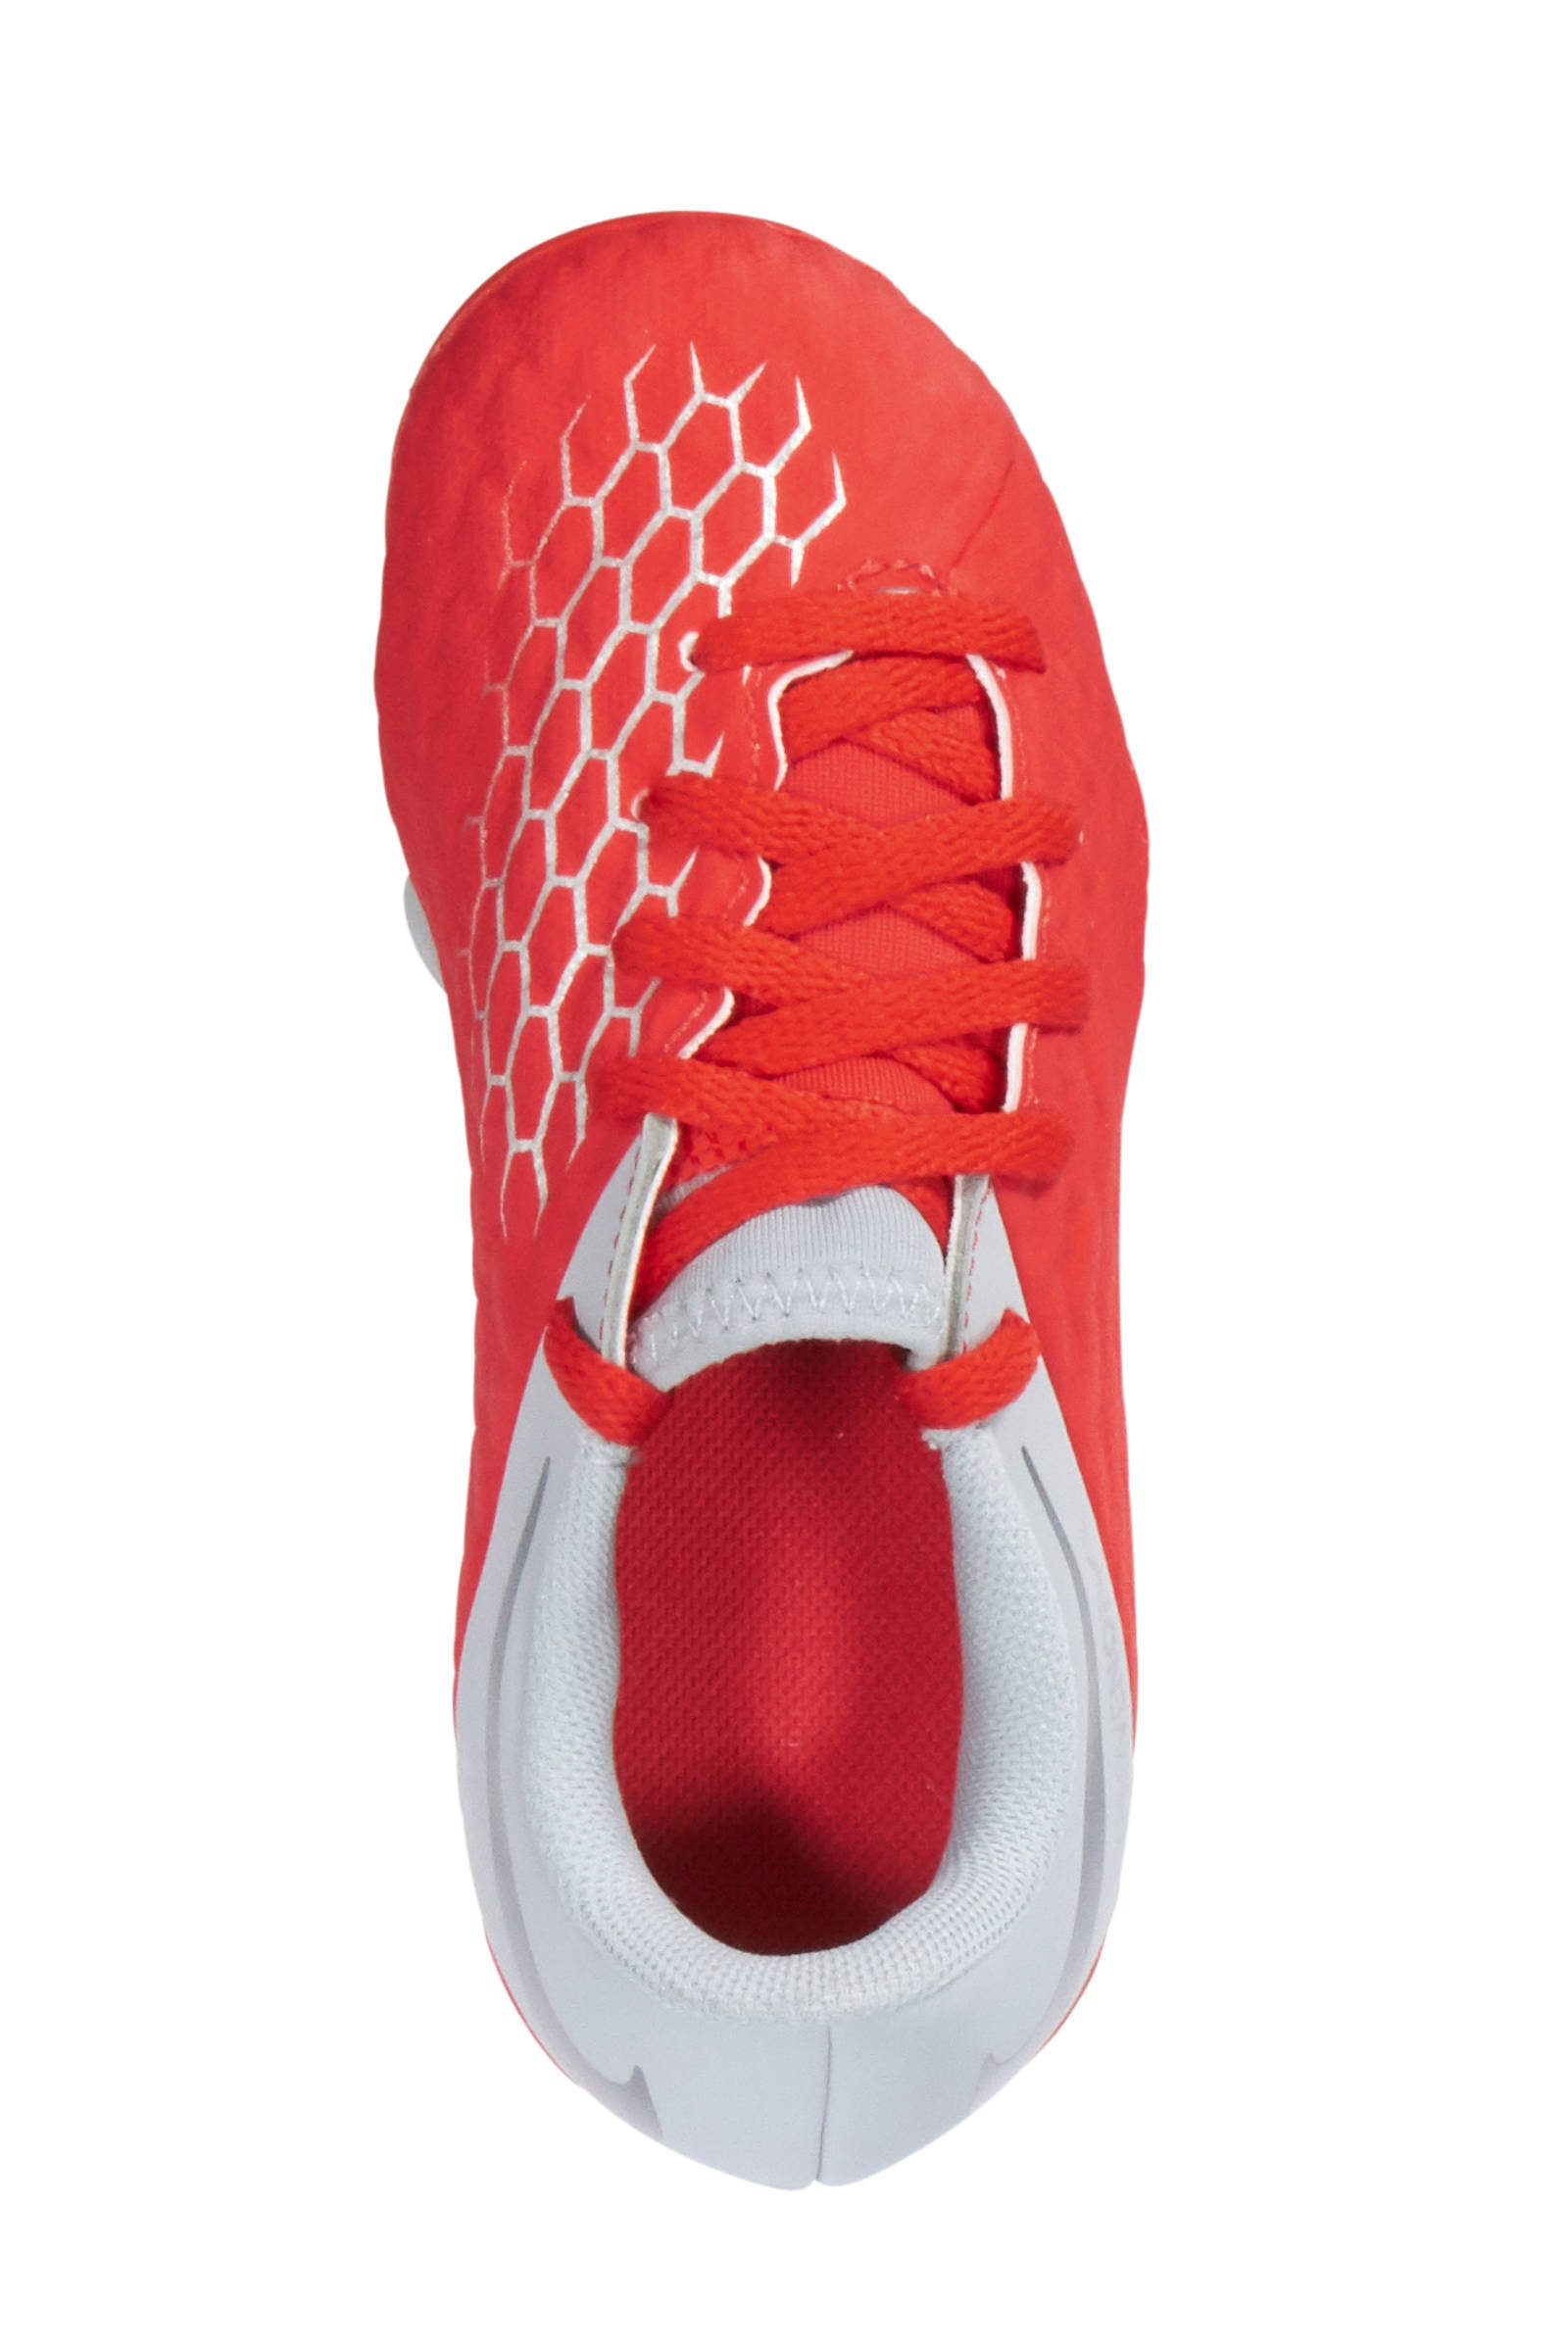 New Nike Hypervenom Phantom III DF FG For Sale Red White